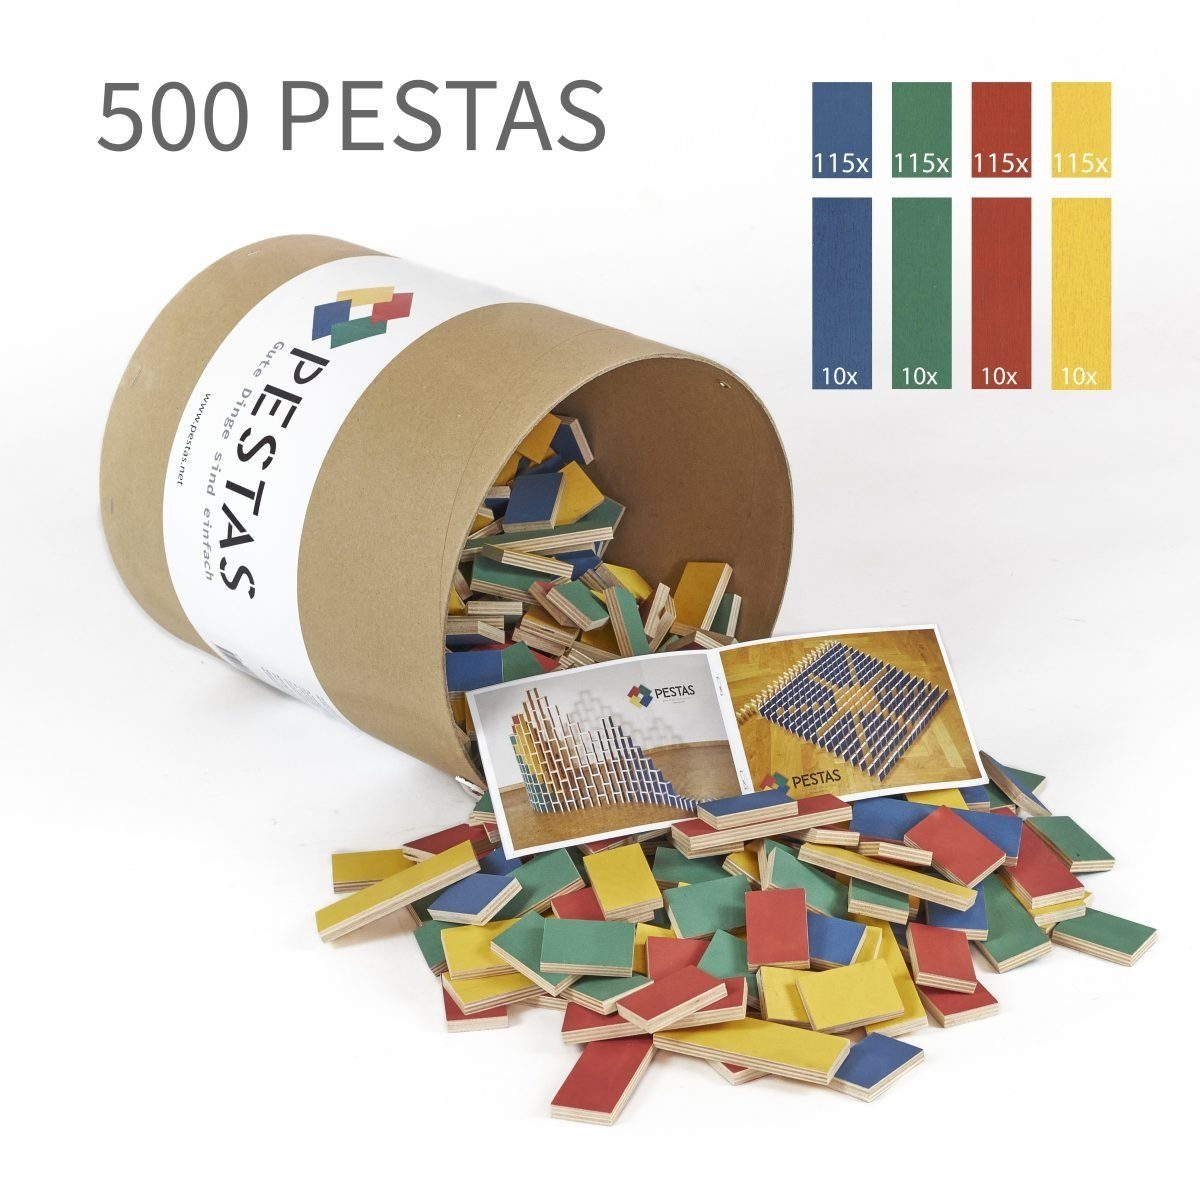 Pestas Spielesammlung, 500 bunte Dominosteine aus Birkensperrholz in einer Box